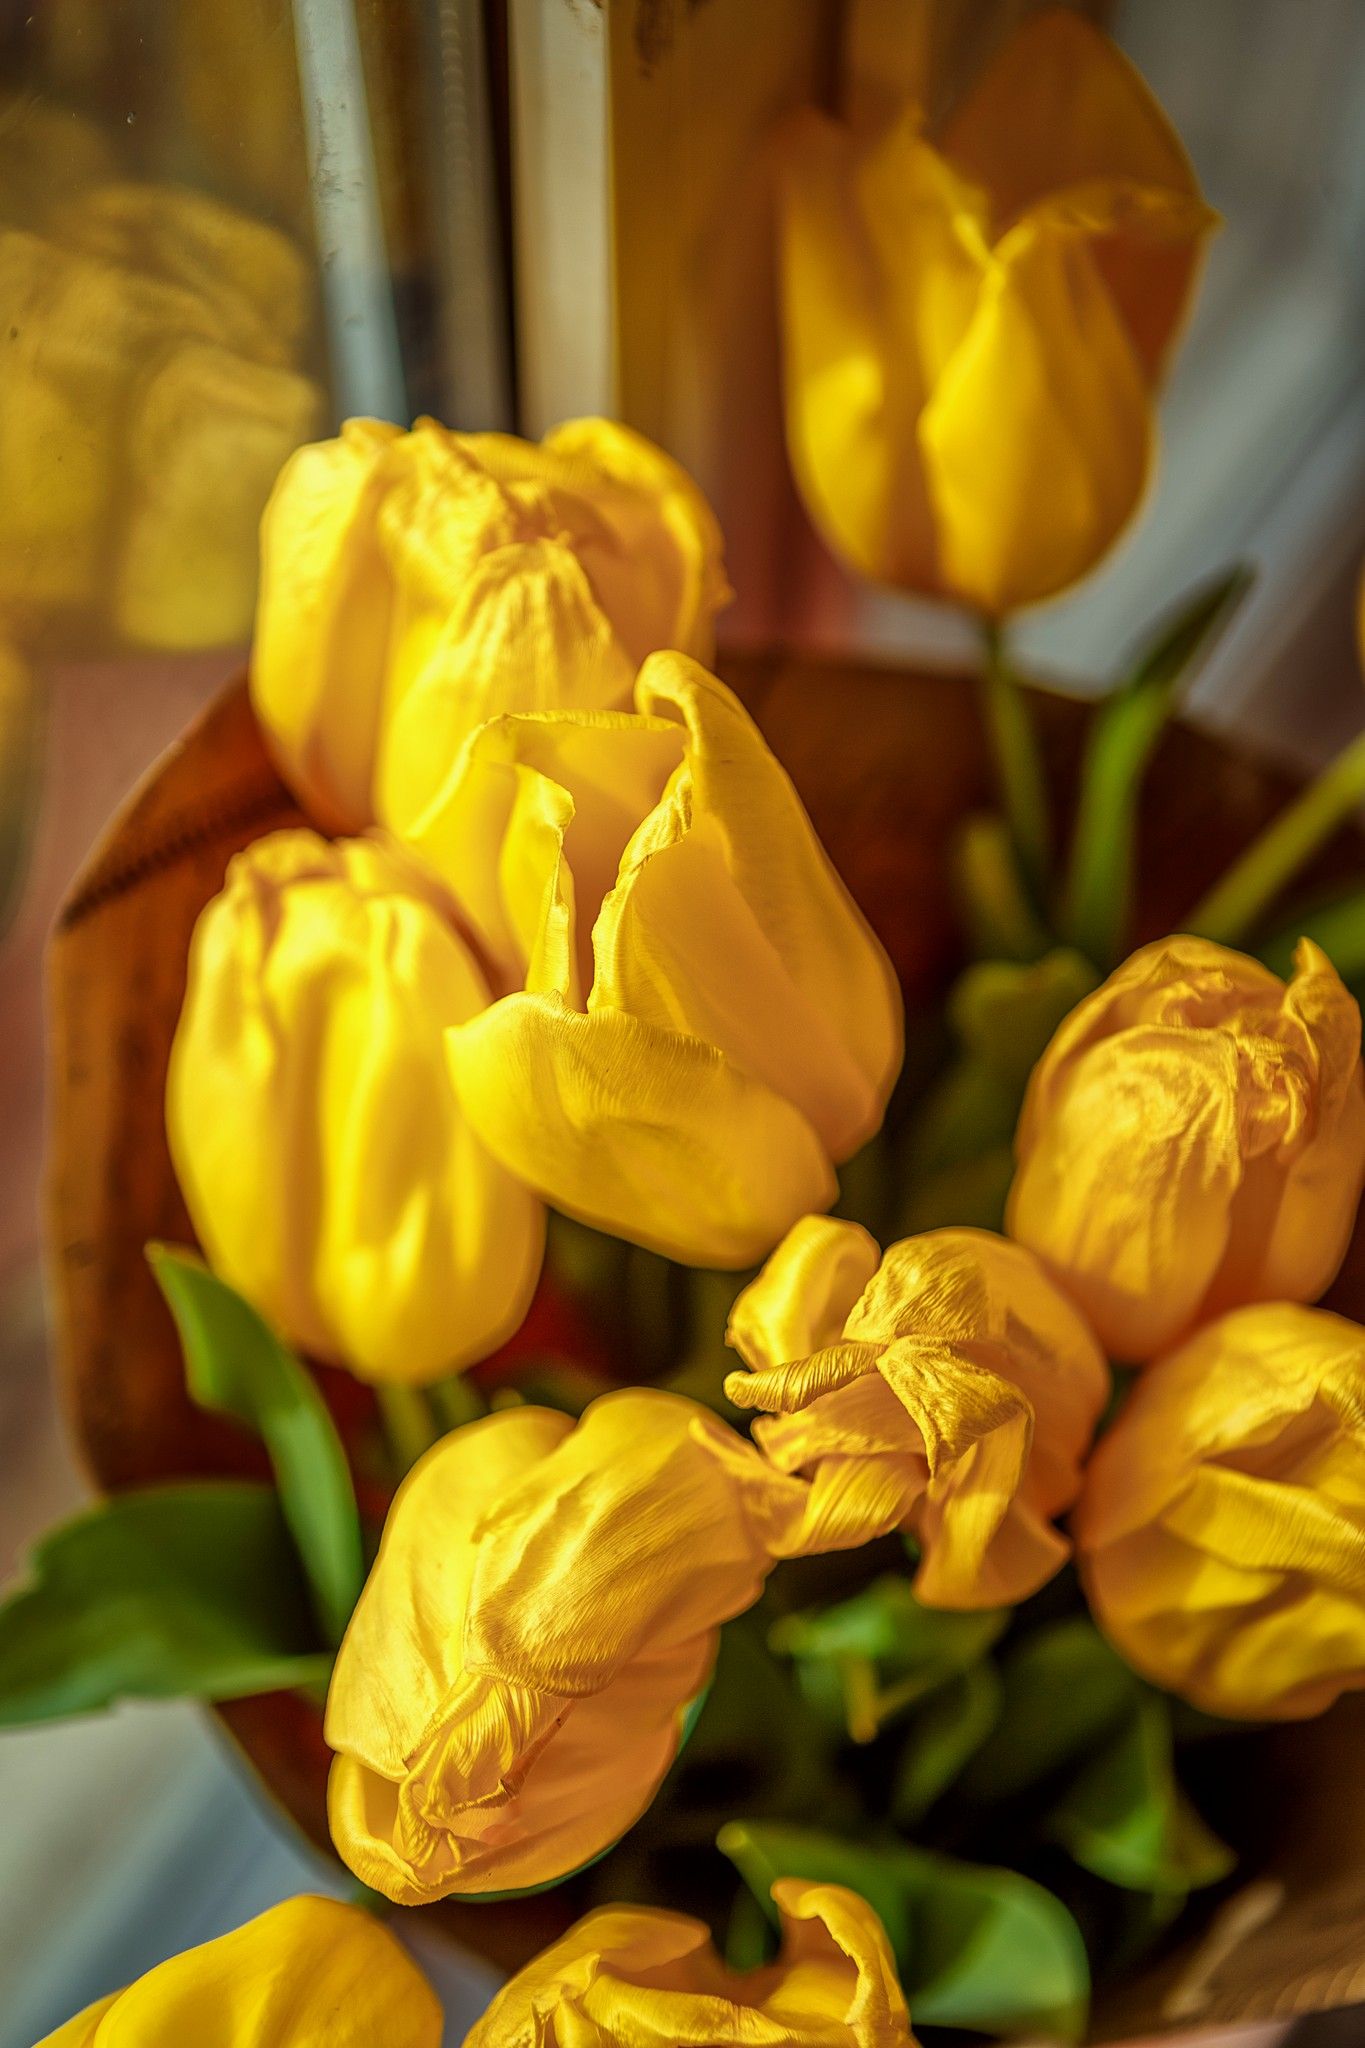 тюльпаны, девочка с тюльпанами, желтый цвет в фото, ребенок, Дуклер Алёна